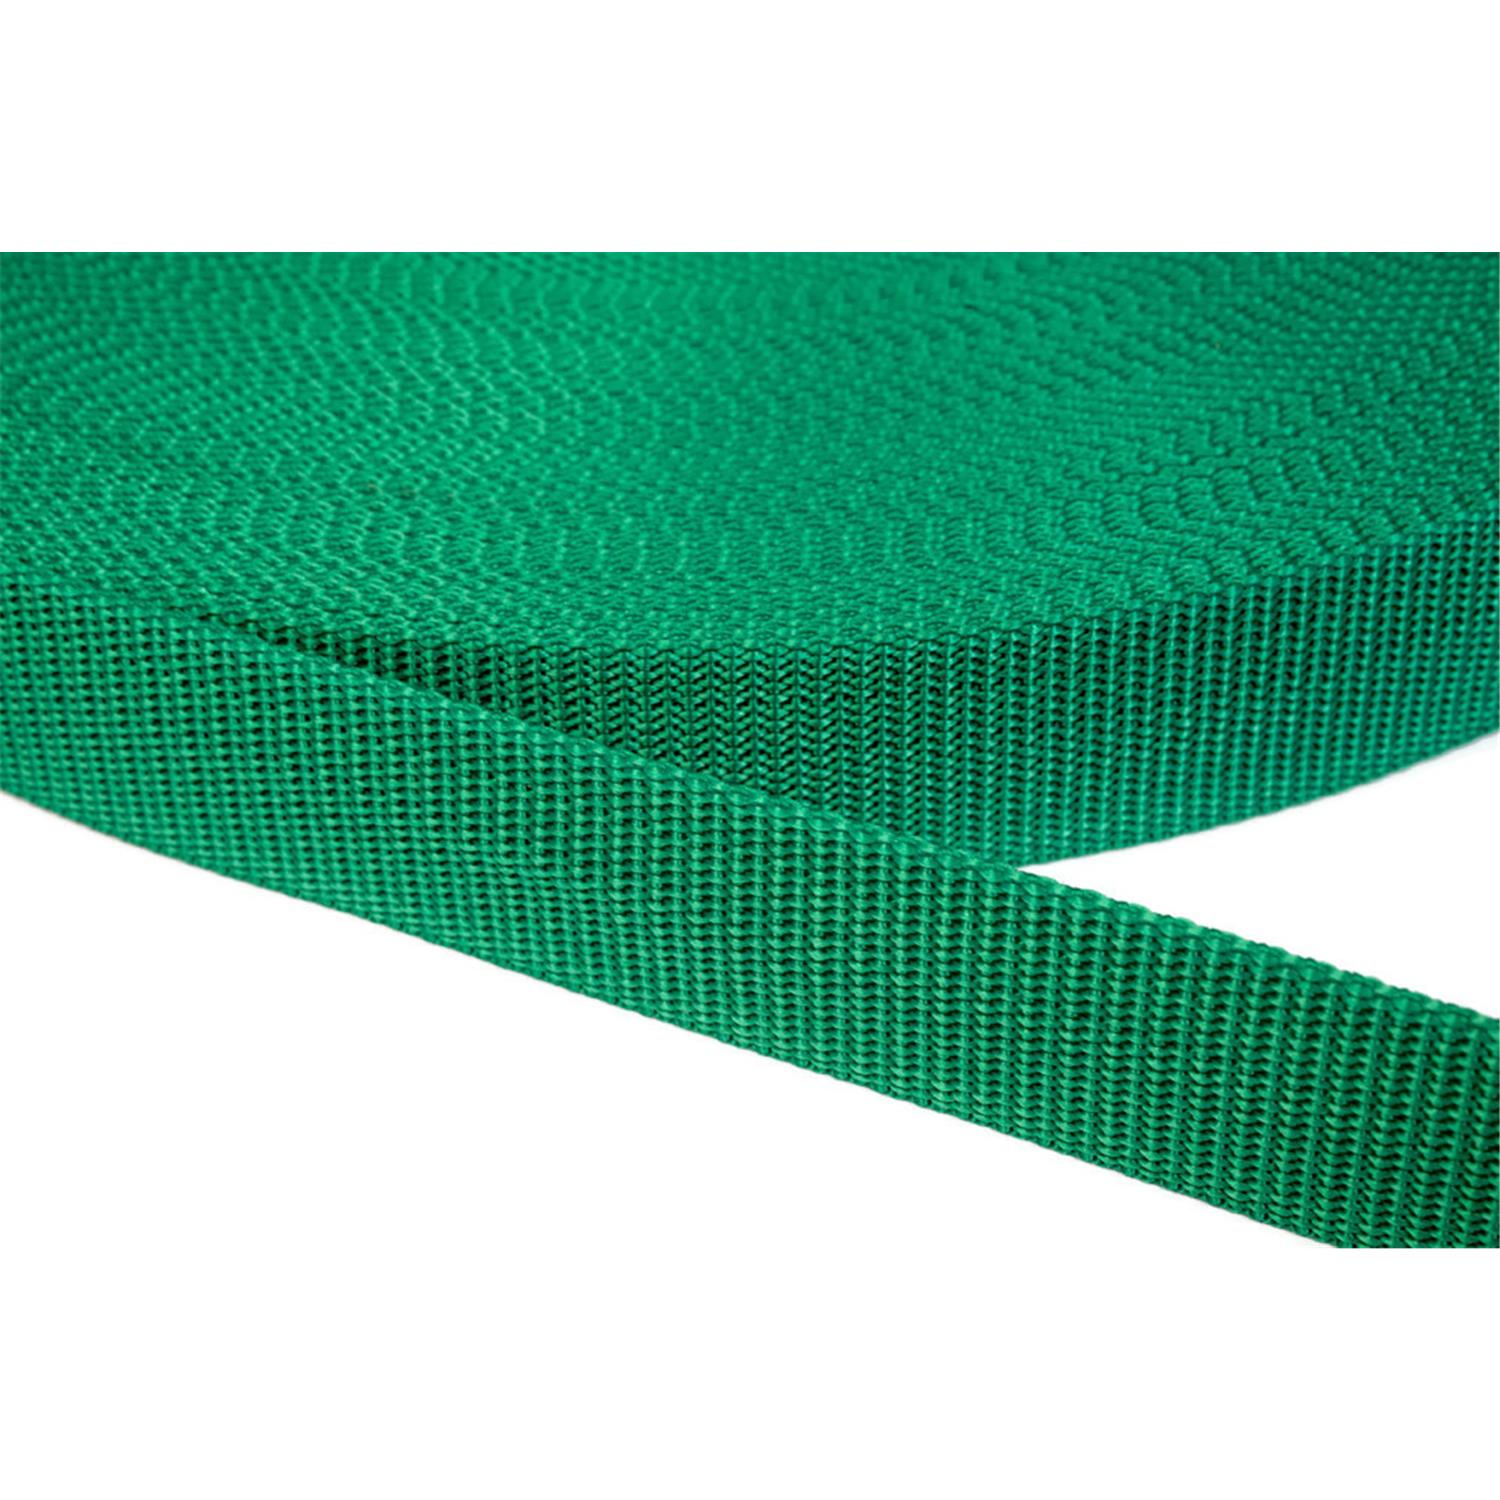 Gurtband 25mm breit aus Polypropylen in 41 Farben 34 - grün 6 Meter